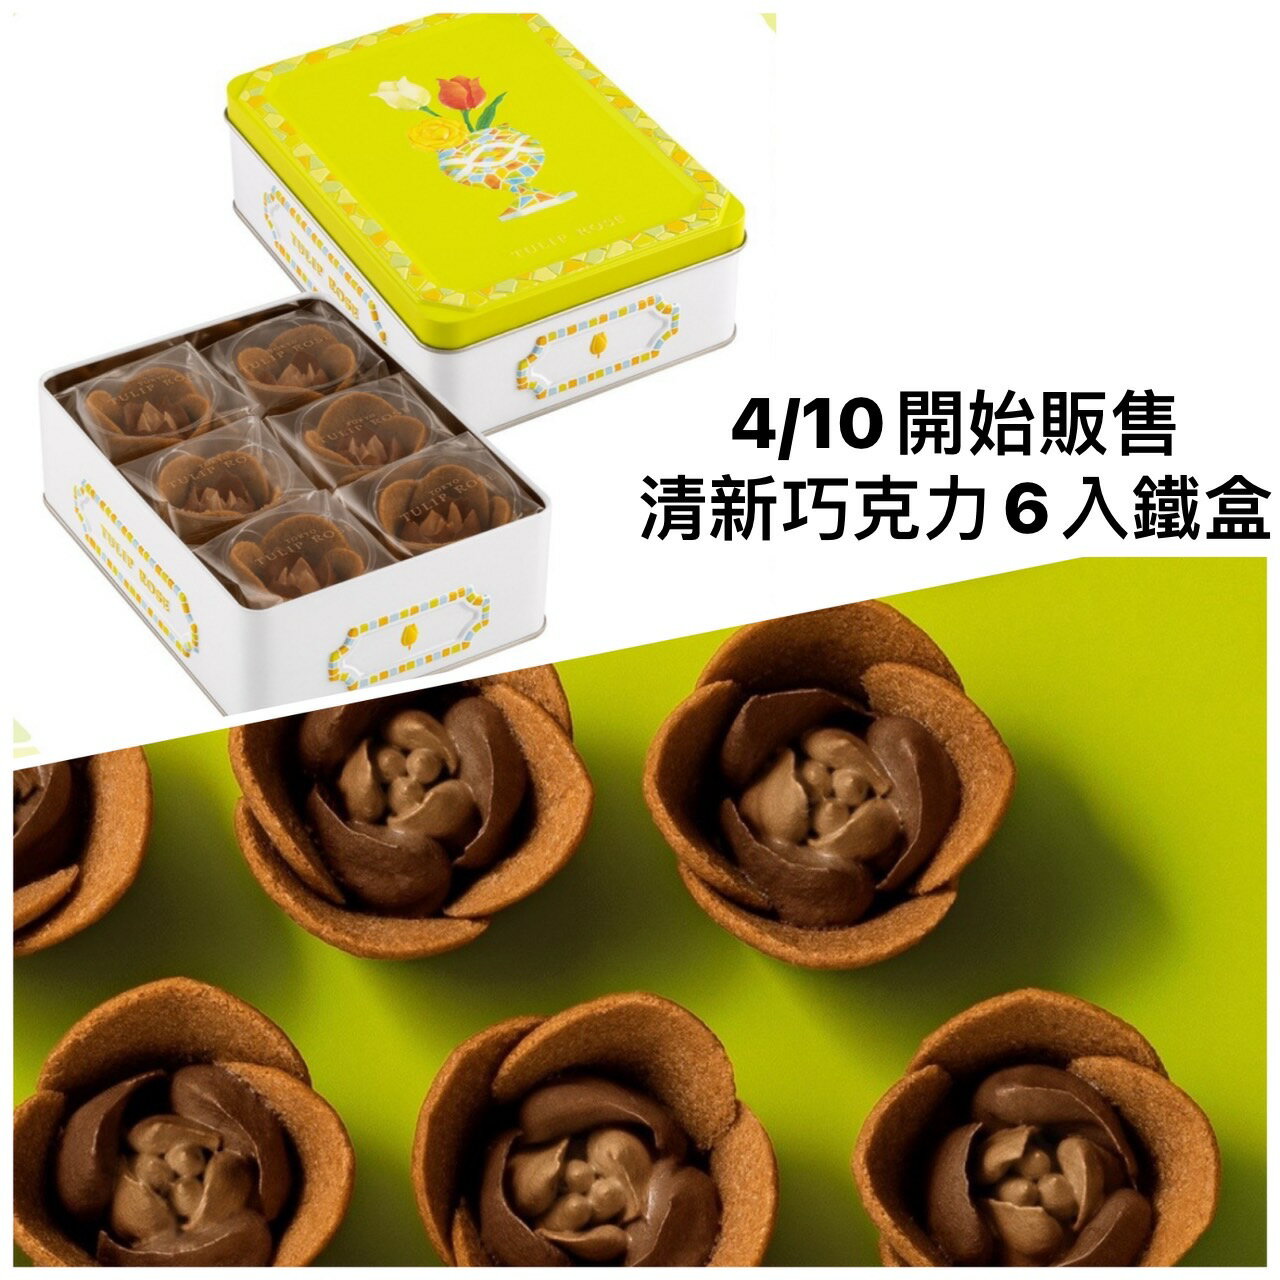 【預購】東京 Tulip rose新品 鬱金香餅乾 玫瑰餅乾 費南雪 禮盒 日本伴手禮 有發票